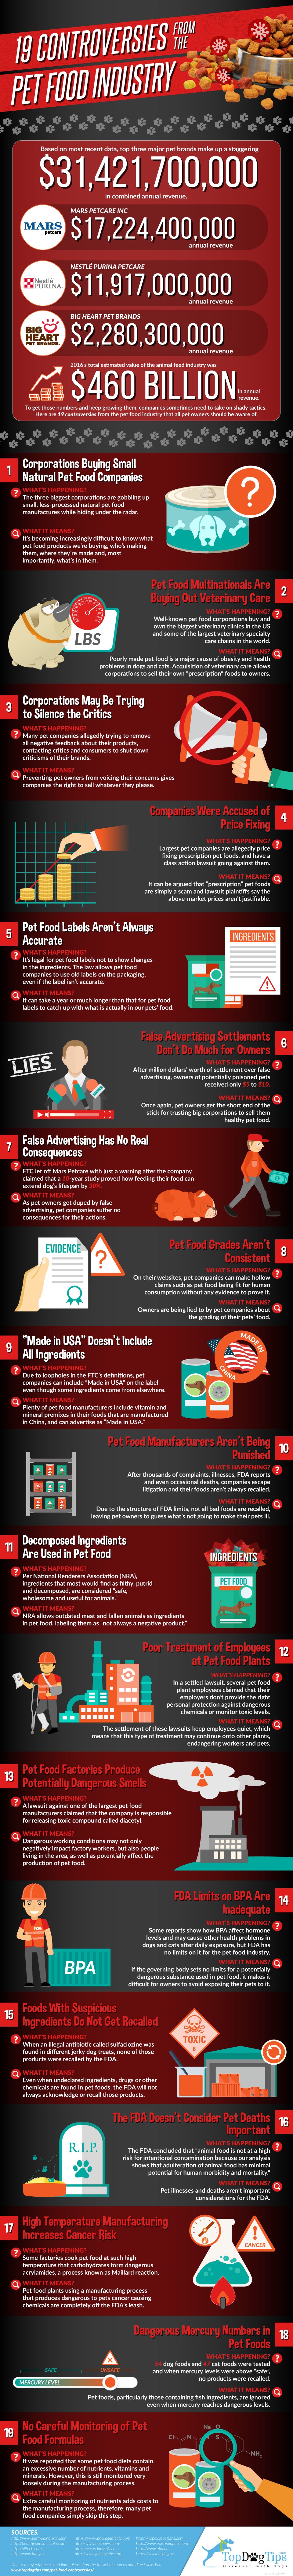 19 controverses rond de diervoedingsindustrie [Infographic]